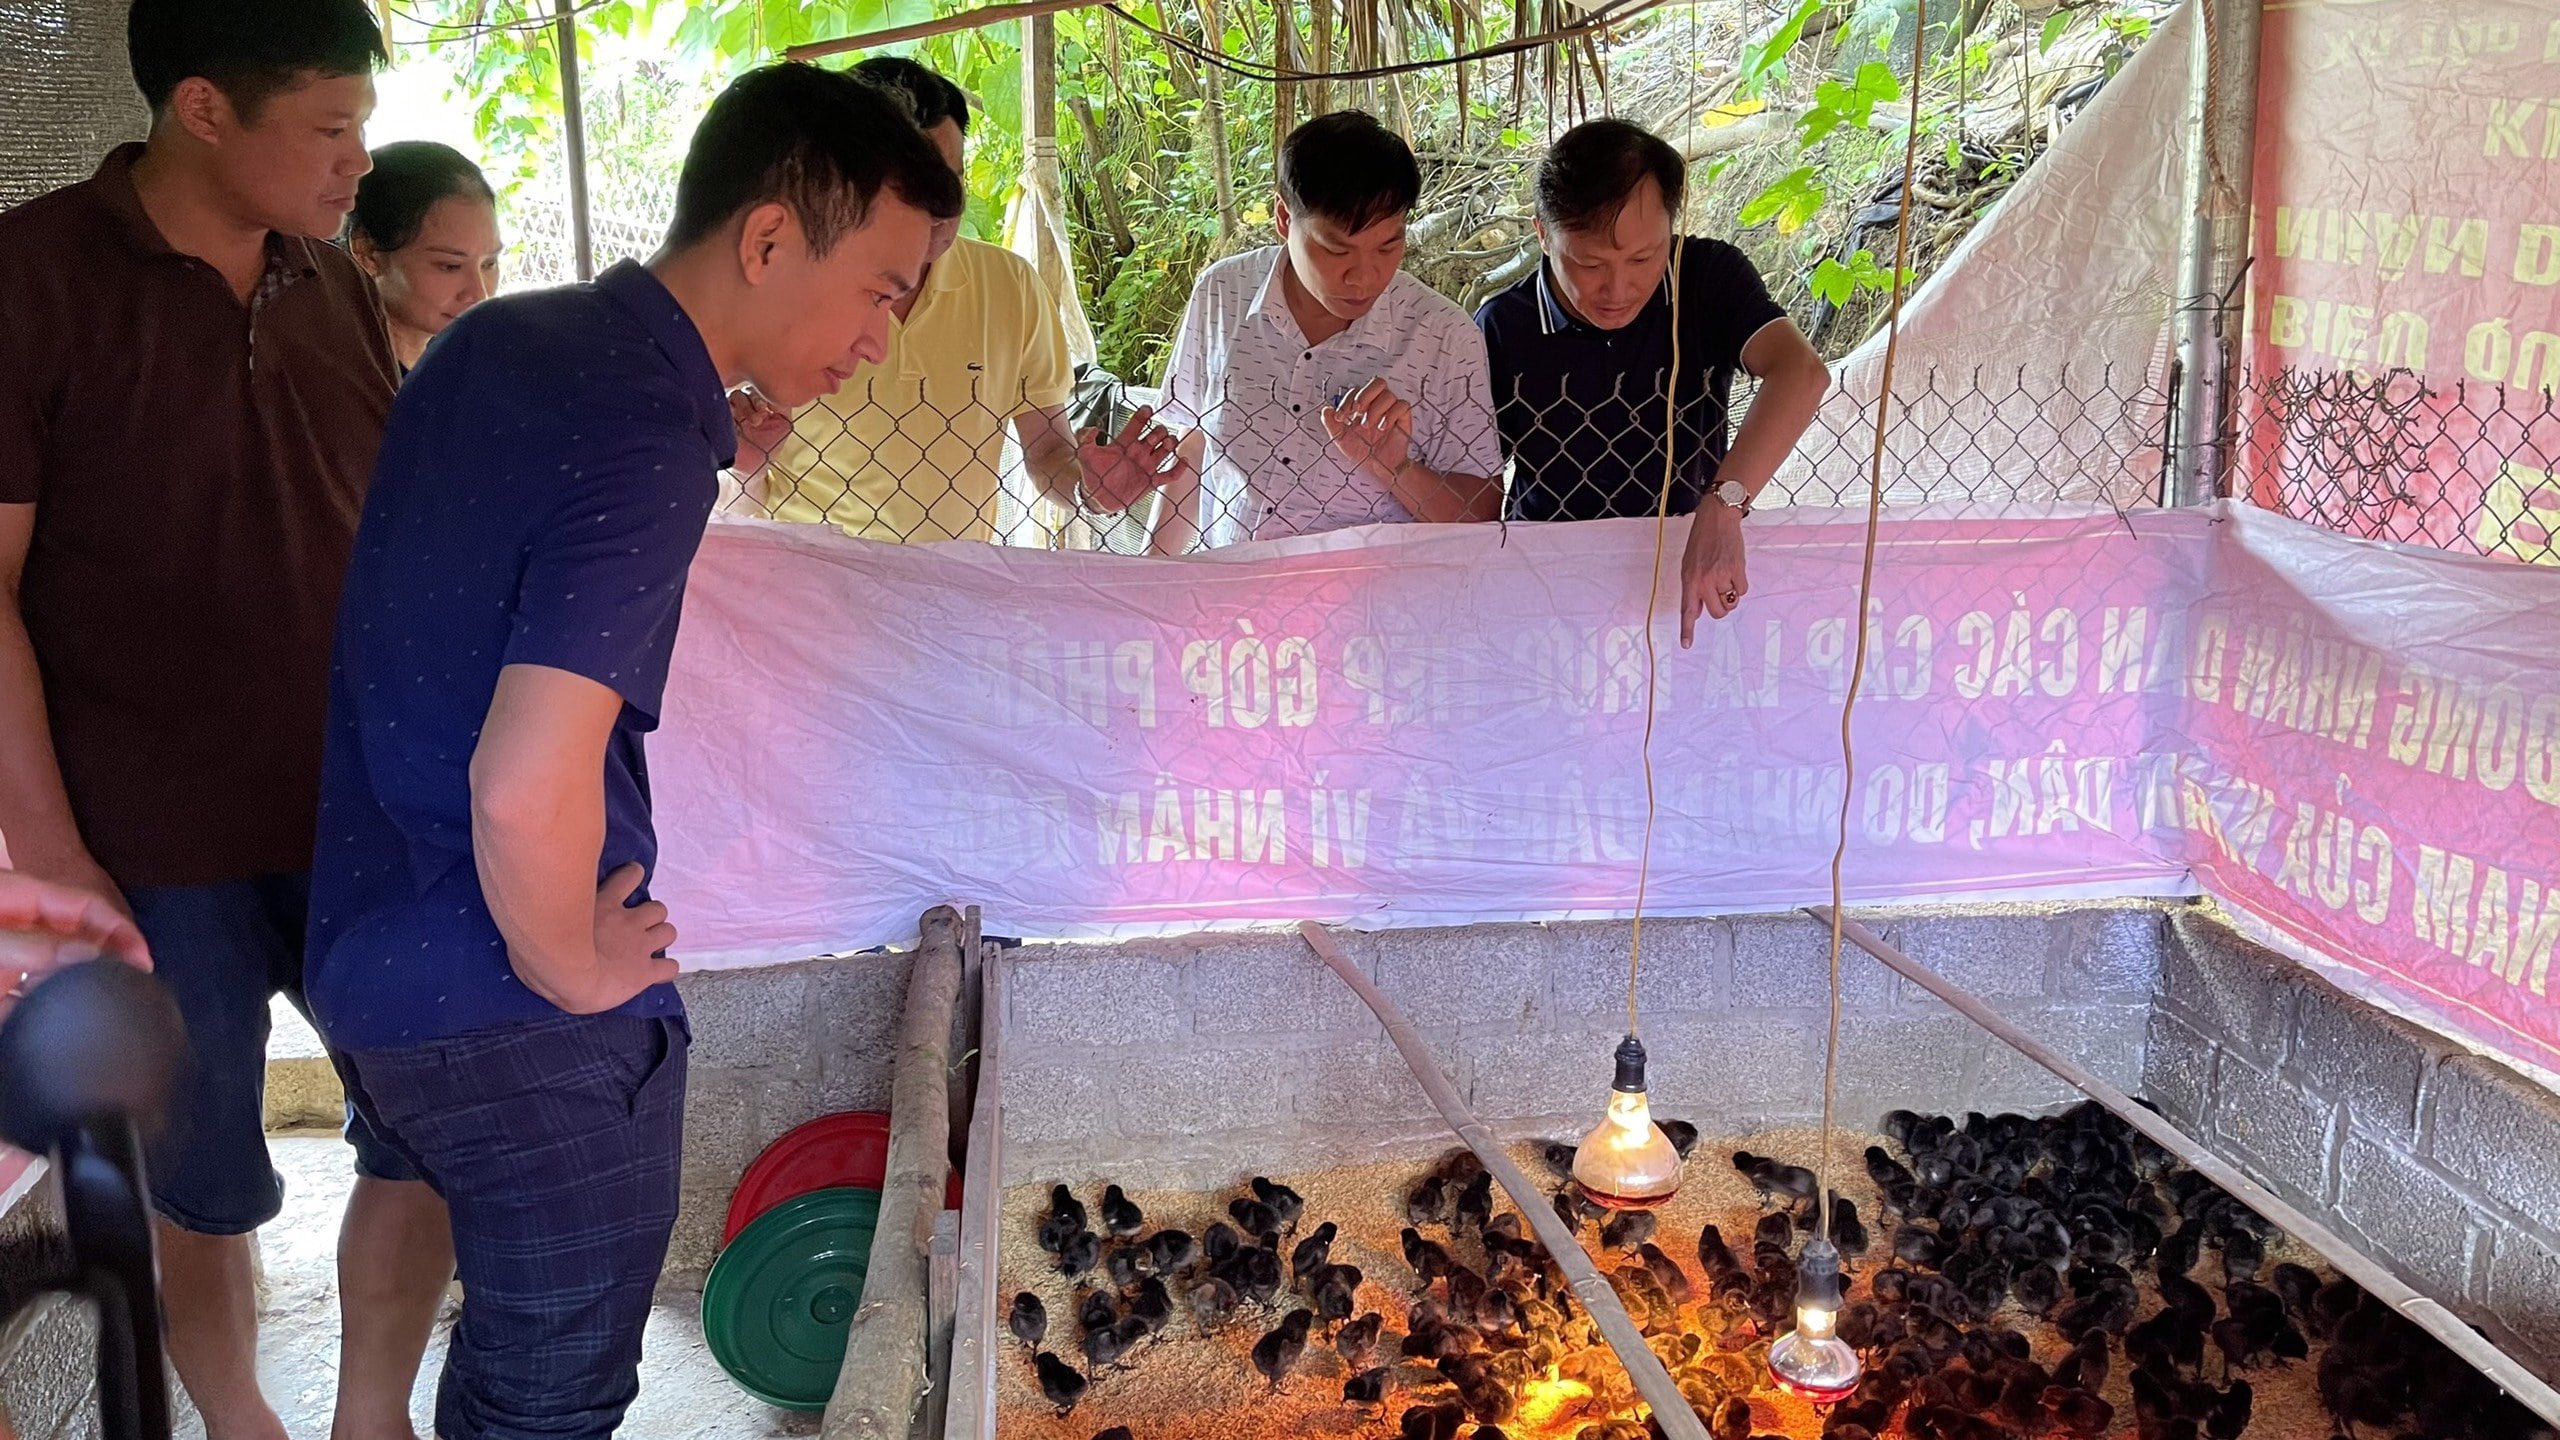 Tham gia đồng hành giúp dân thoát nghèo tại xã vùng cao Tân Phượng, huyện Lục Yên